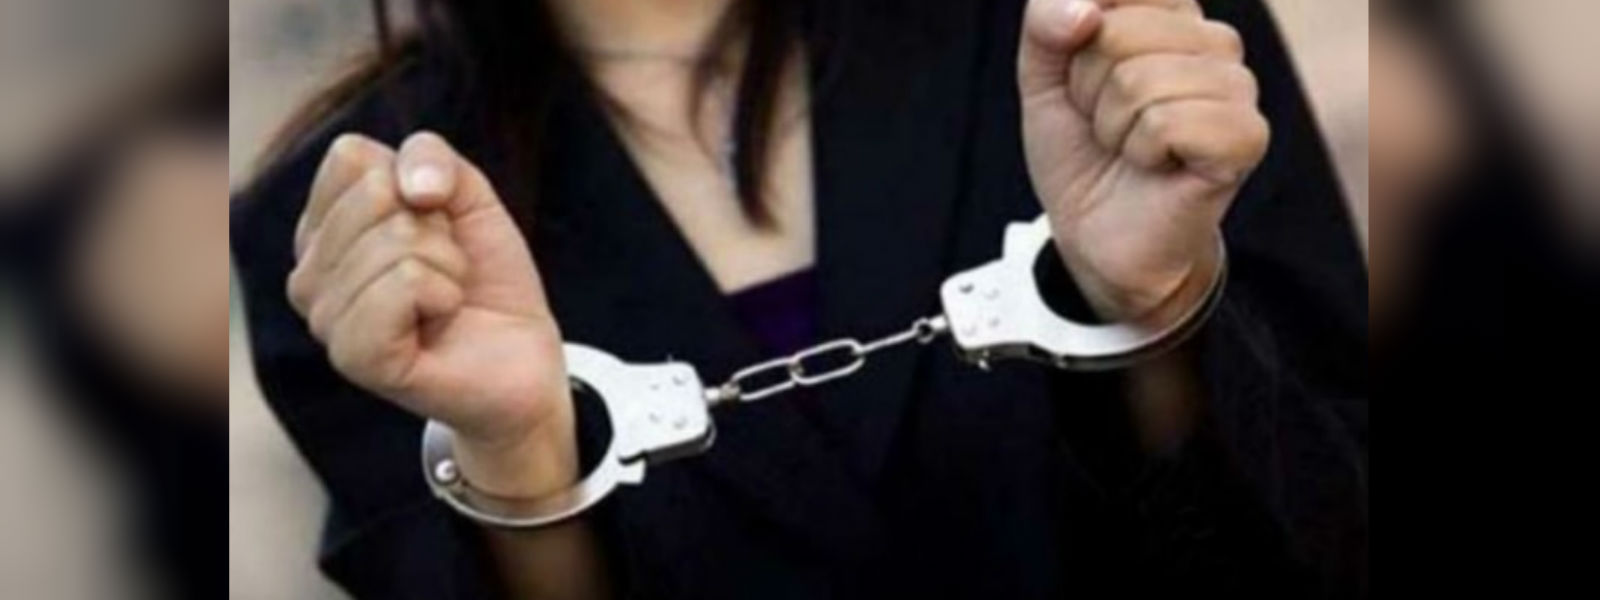 52 arrested for alleged prostitution